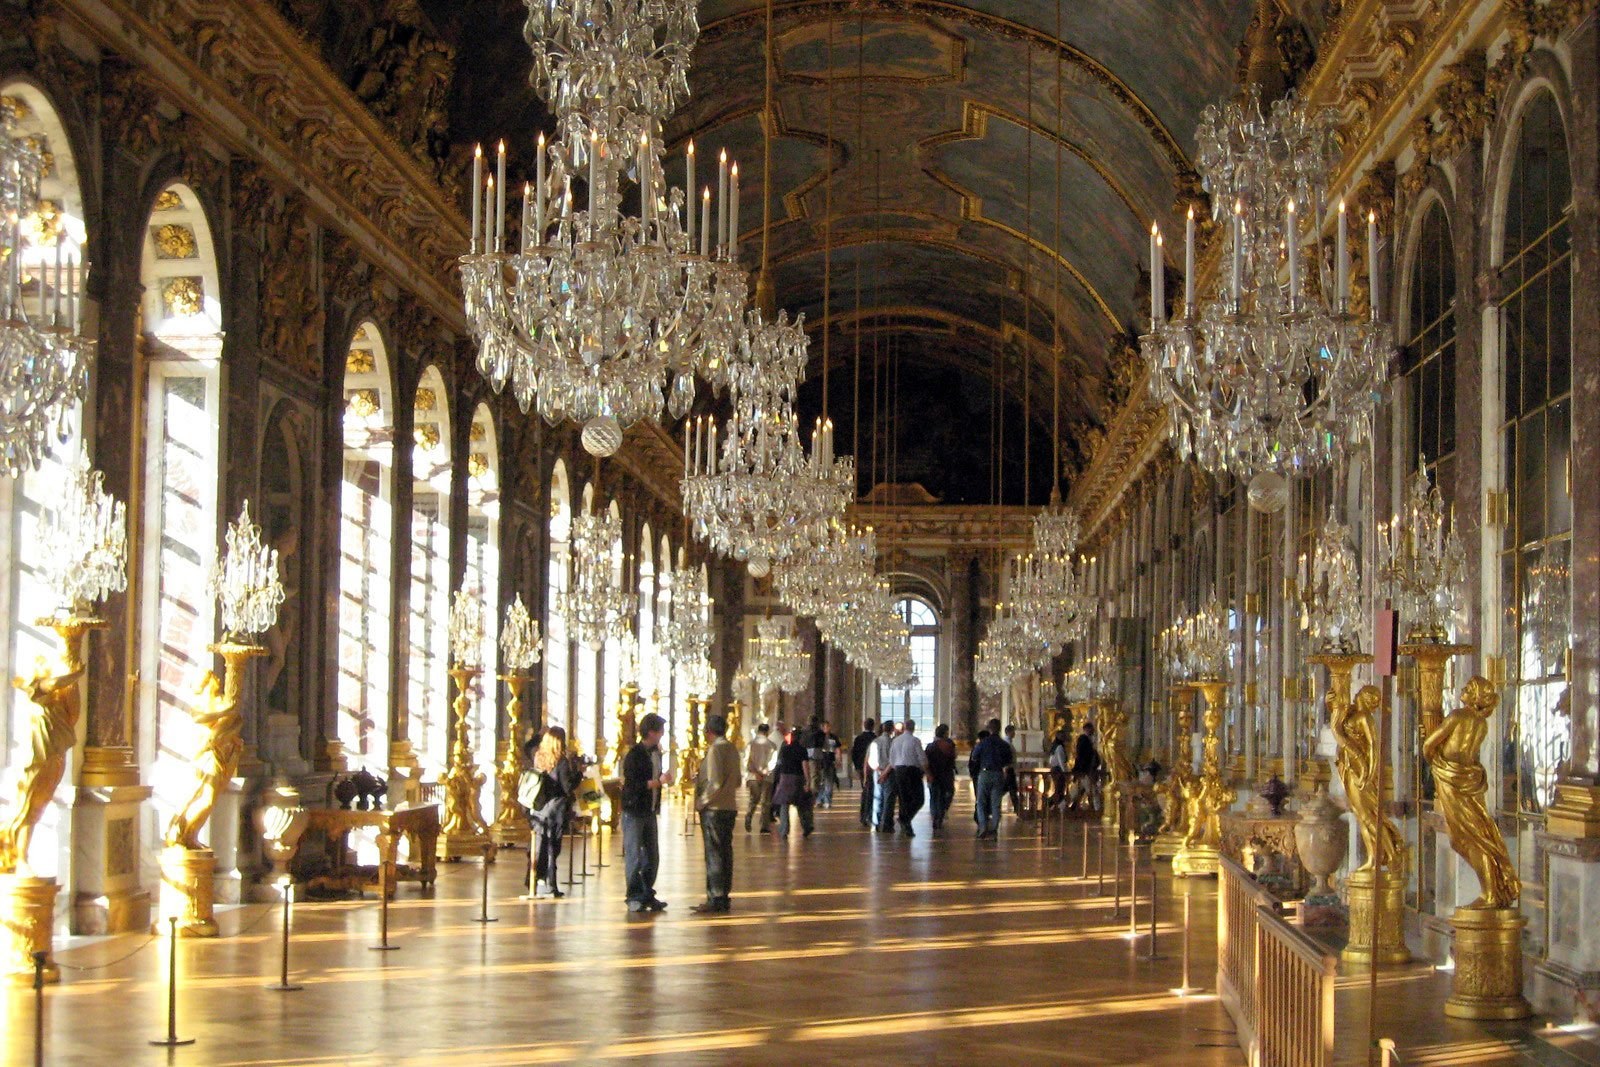 Версальский дворец внутри с описанием